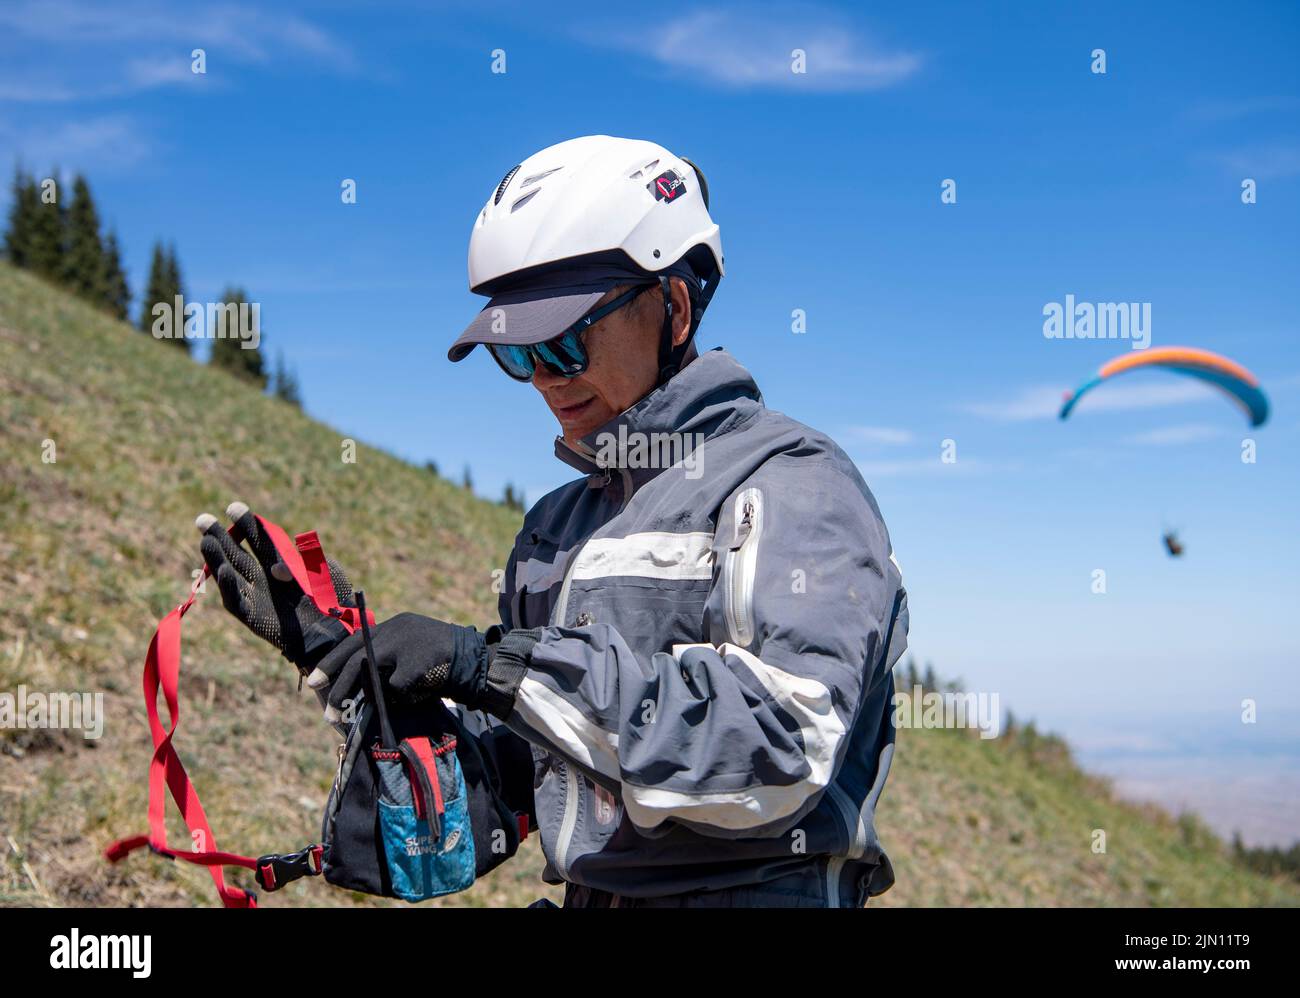 (220808) -- XINJIANG, 8. August 2022 (Xinhua) -- Chen Ruifeng überprüft sein Radio vor dem Start im Bezirk Jimsar, nordwestlich der Autonomen Region Xinjiang Uygur in China, 21. Mai 2022. Der 52-jährige Chen Ruifeng, der in Xinjiang geboren wurde, ist ein Paragliding-Amateur. Er sagt, dass er sich wie mit seinen eigenen Flügeln fühlt, wenn der Gleitschirm geöffnet wird. Im Jahr 2016 begann Chen Ruifeng, Gleitschirmfliegen zu üben. Später trat er einem lokalen Verein bei und erhielt nach dem Training seine Flugbescheinigung. Als Outdoor-Enthusiast engagiert er sich auch für Trailrunning, Bergsteigen und Eisklettern. Seiner Meinung nach das einzigartige Gelände von Xinj Stockfoto